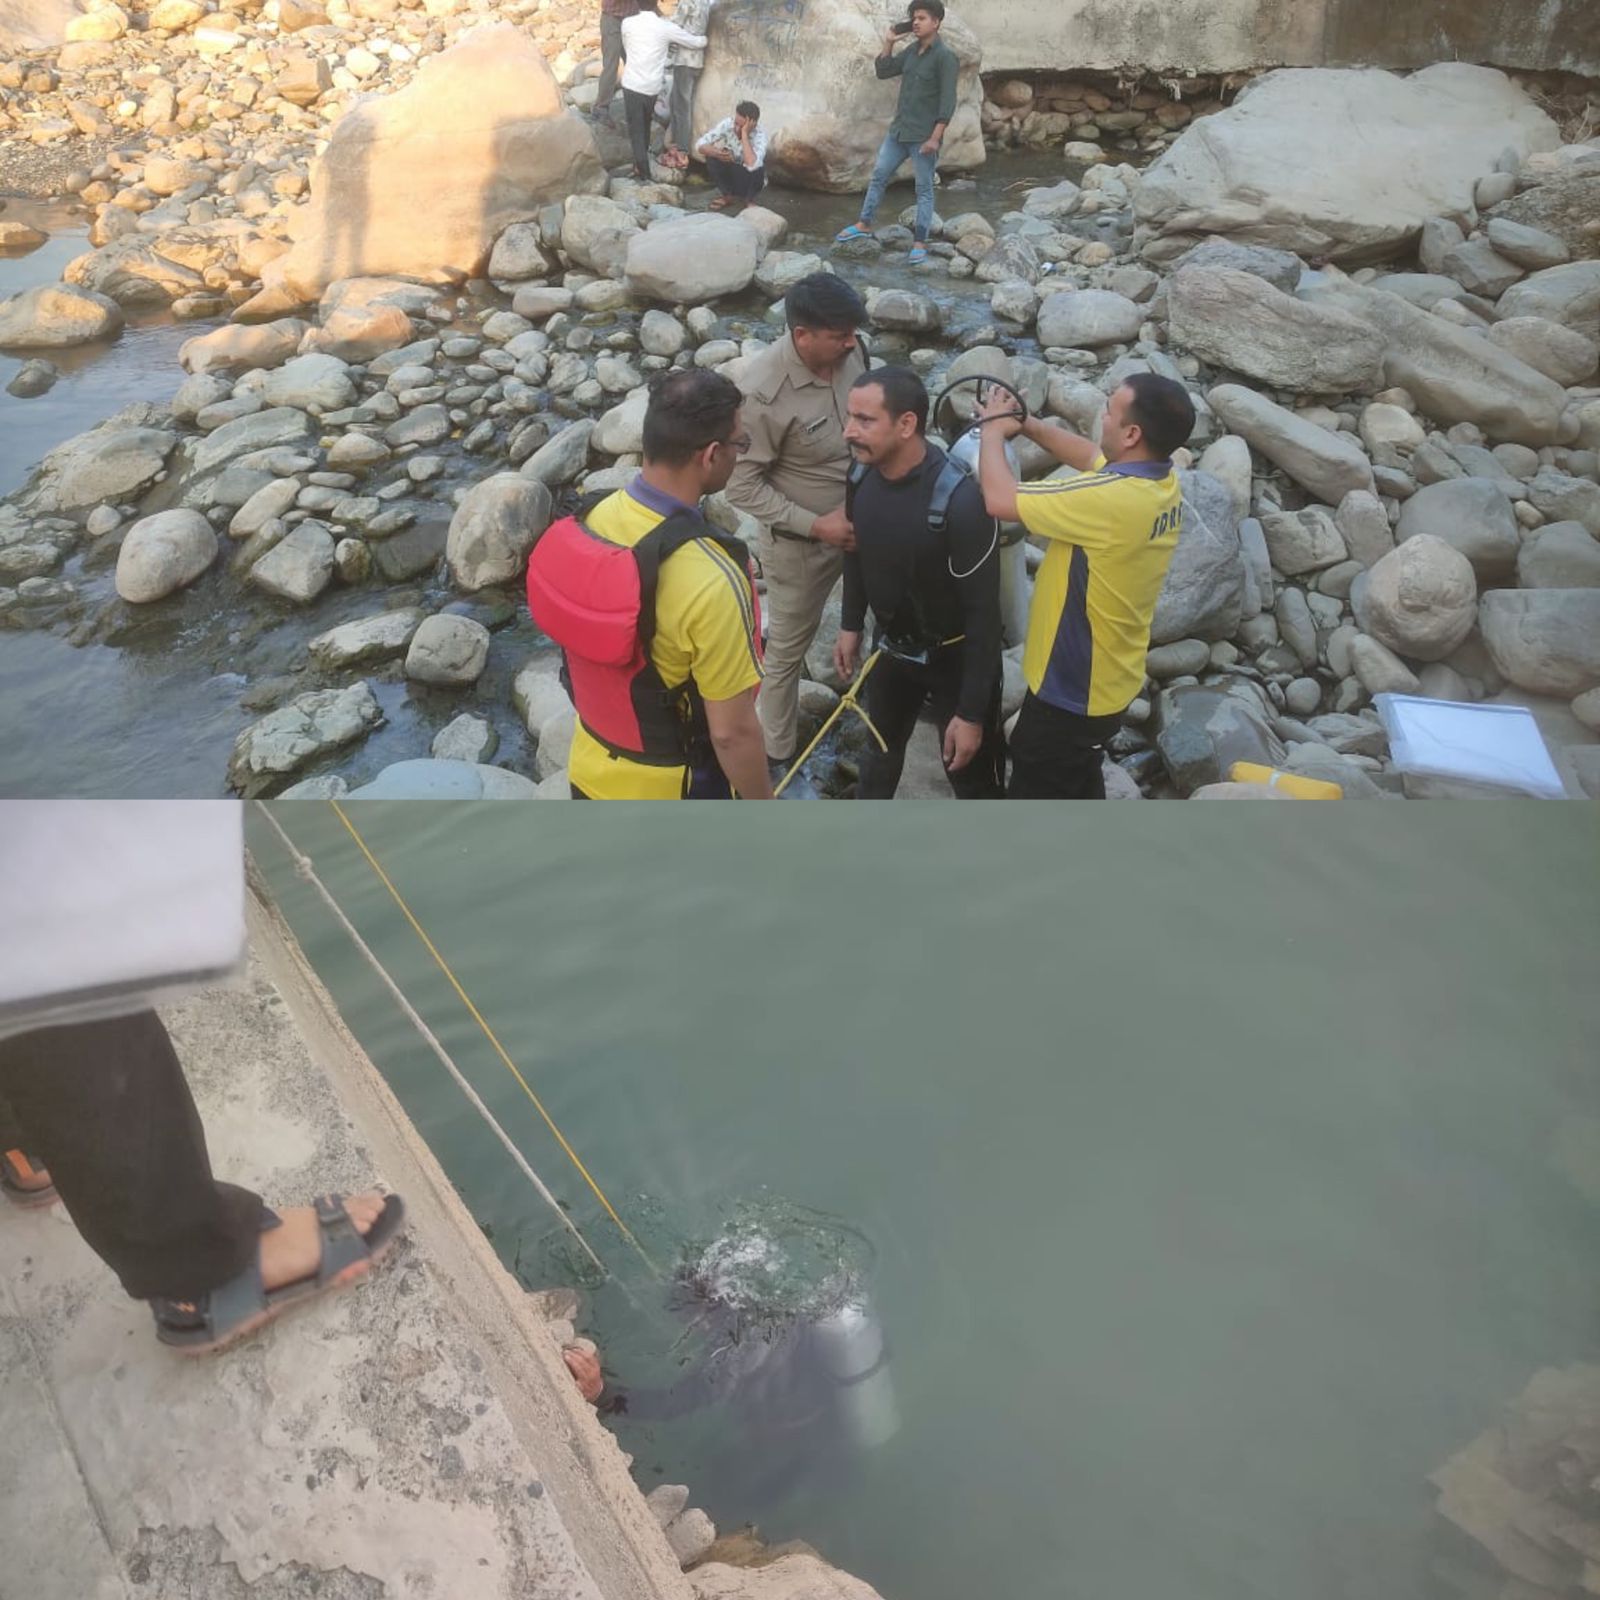 नदी में डूबे किशोर को निकालकर एसडीआरएफ ने पहुंचाया अस्पताल